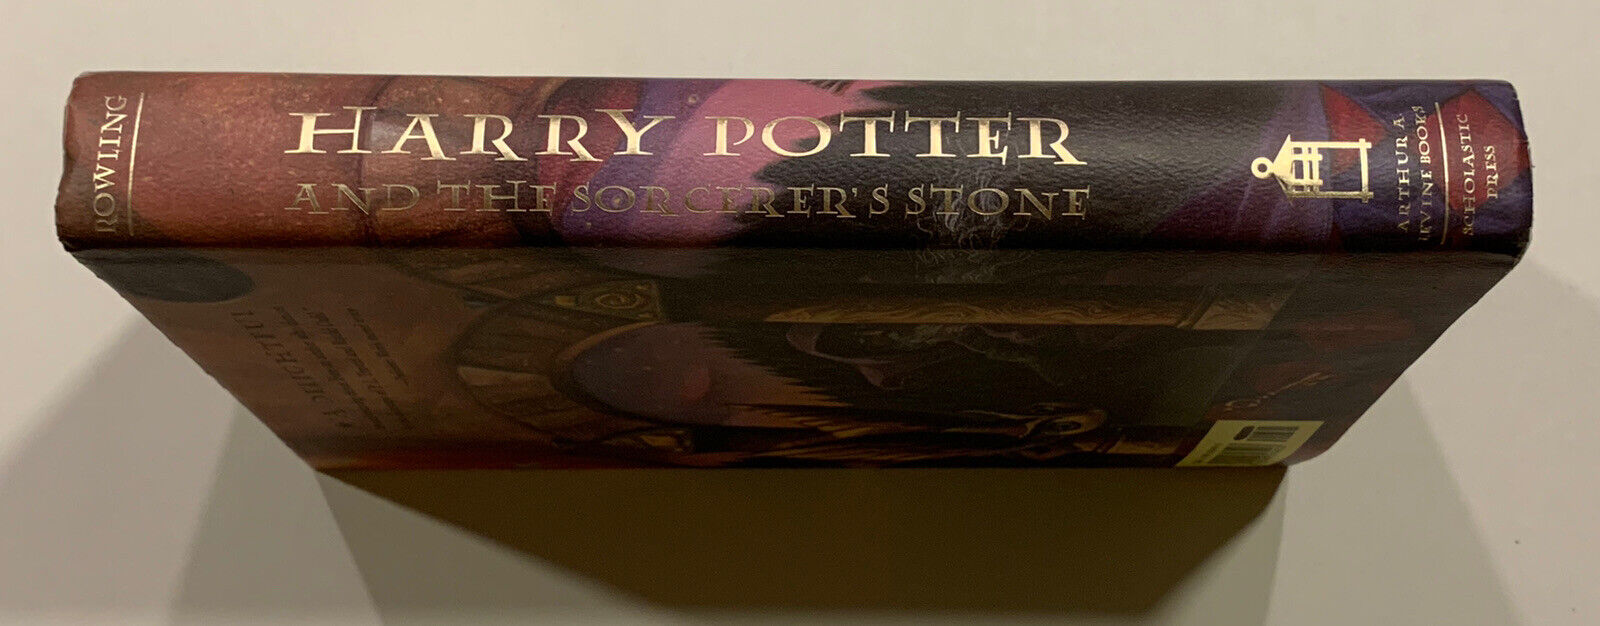 PRINT ERROR - Missing Number on Spine: HARRY POTTER & the Sorcerer’s Stone 1998